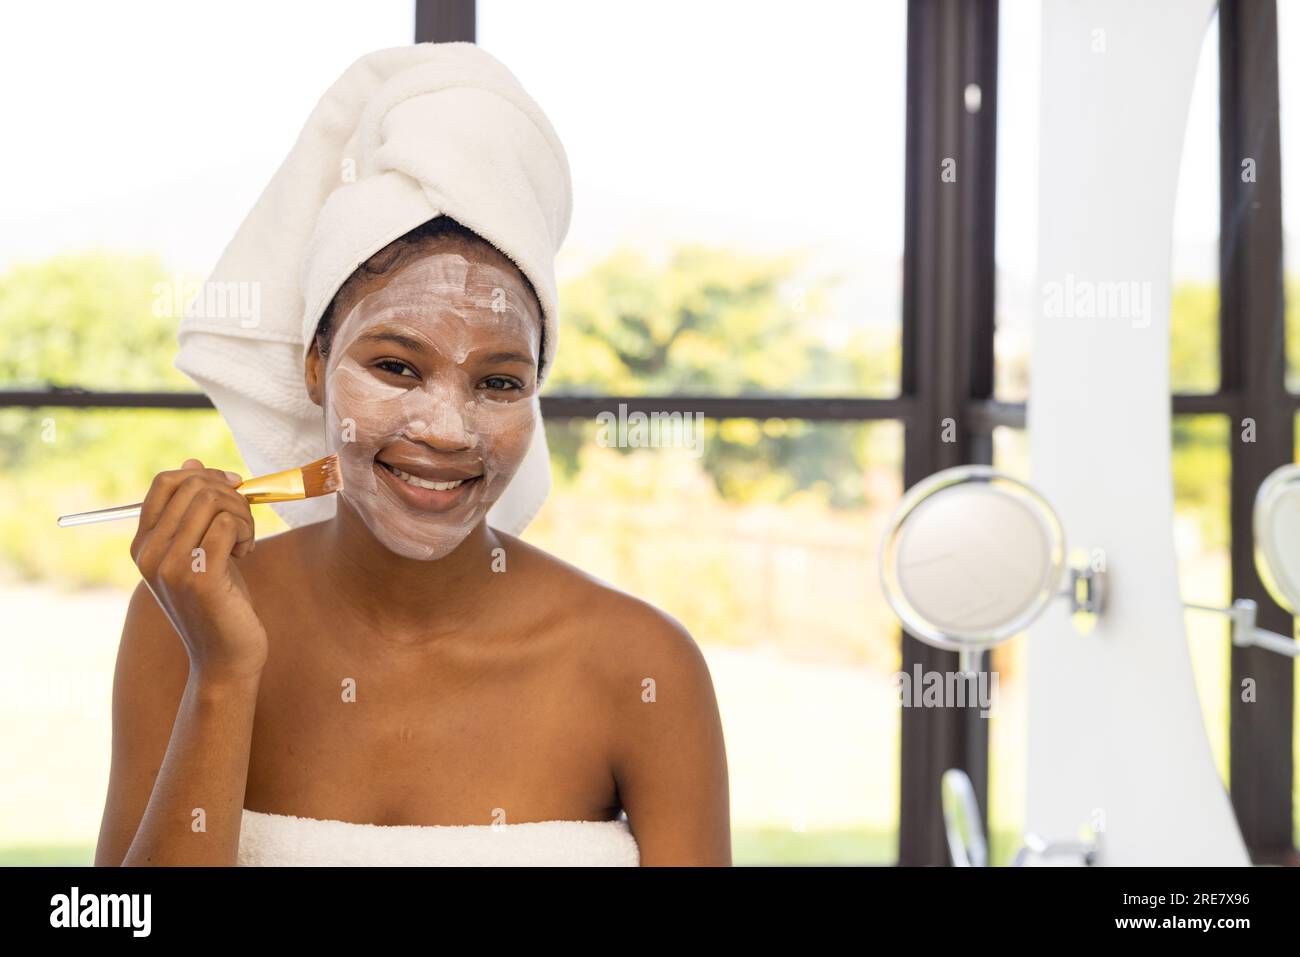 Portrait einer glücklichen afroamerikanischen Frau, die ein Handtuch auf dem Kopf trägt und eine Gesichtsmaske im Badezimmer aufbringt Stockfoto